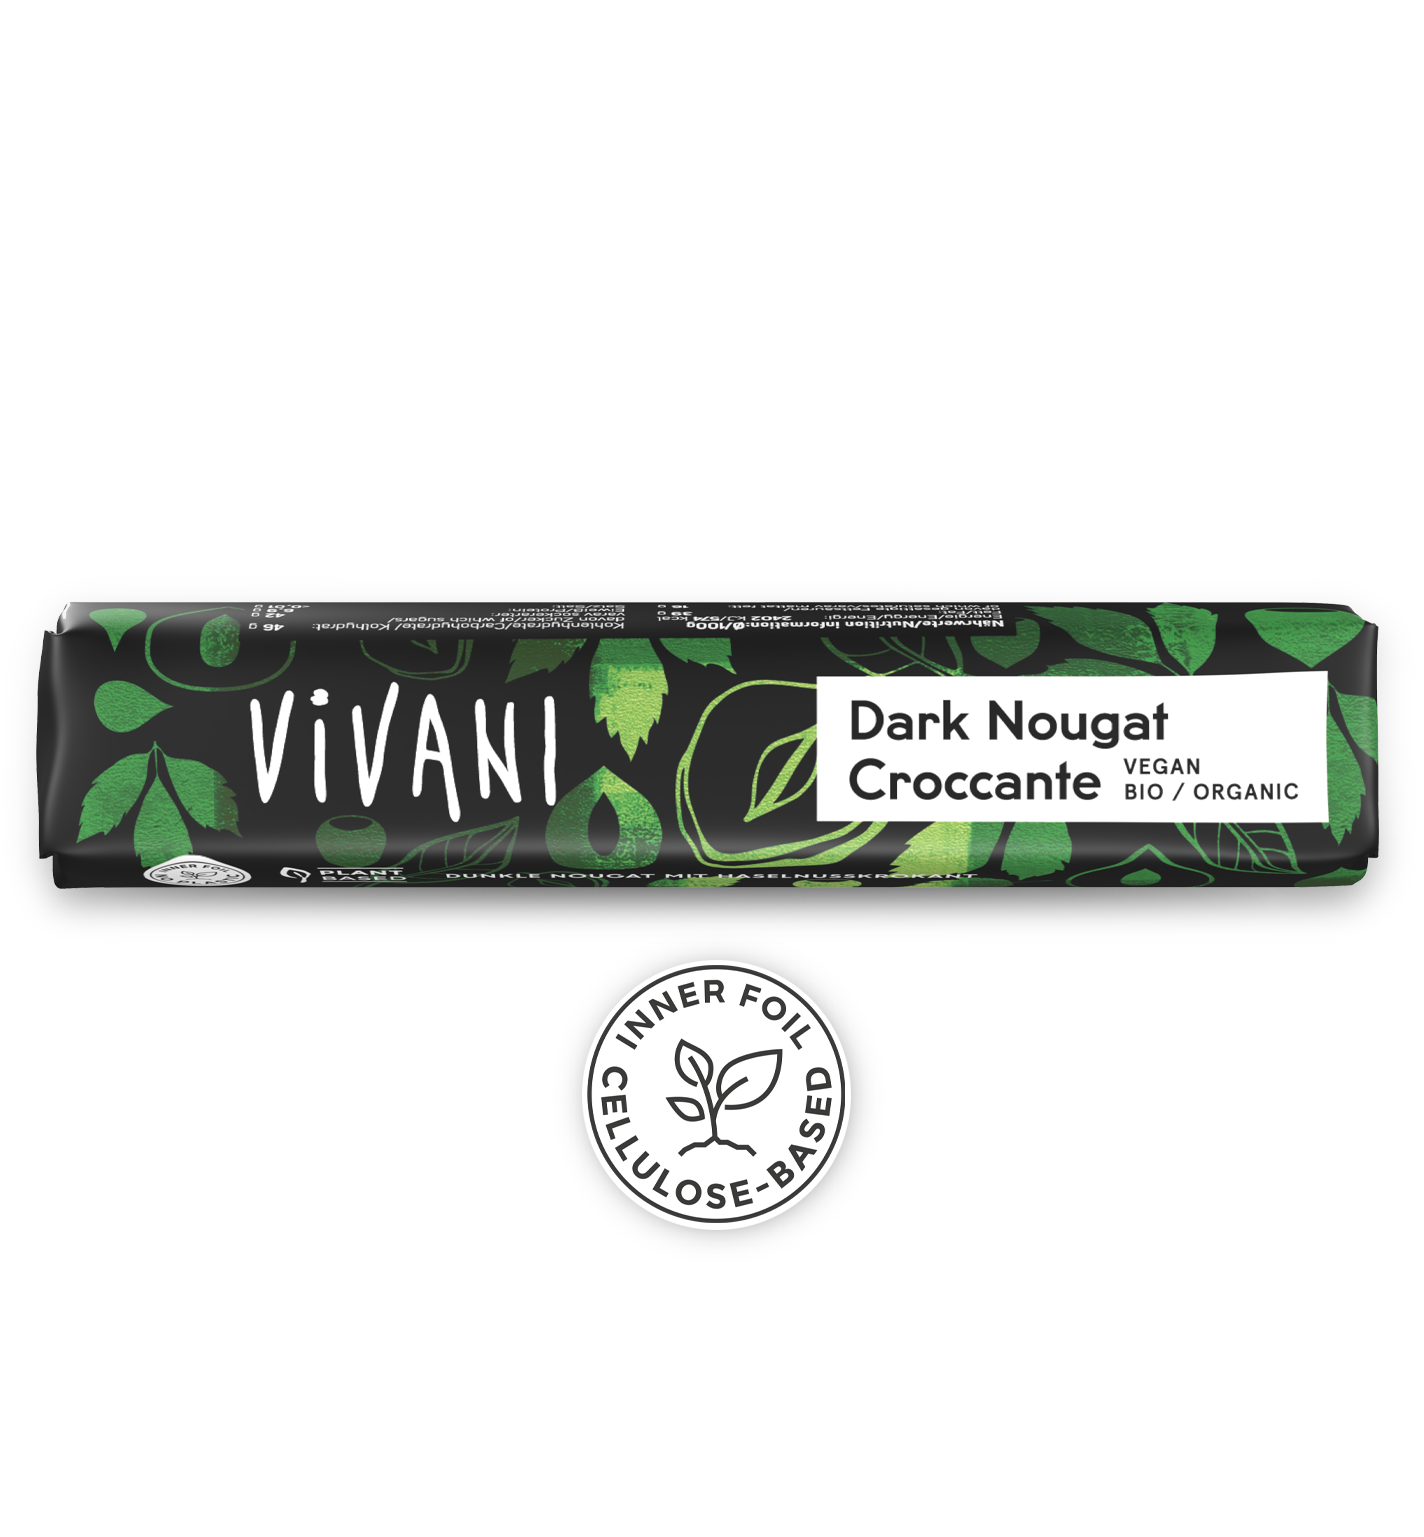 VIVANIs veganske økologiske chokoladebar Dark Nougat Croccante med højt nøddeindhold og sprød hasselnøddeskør